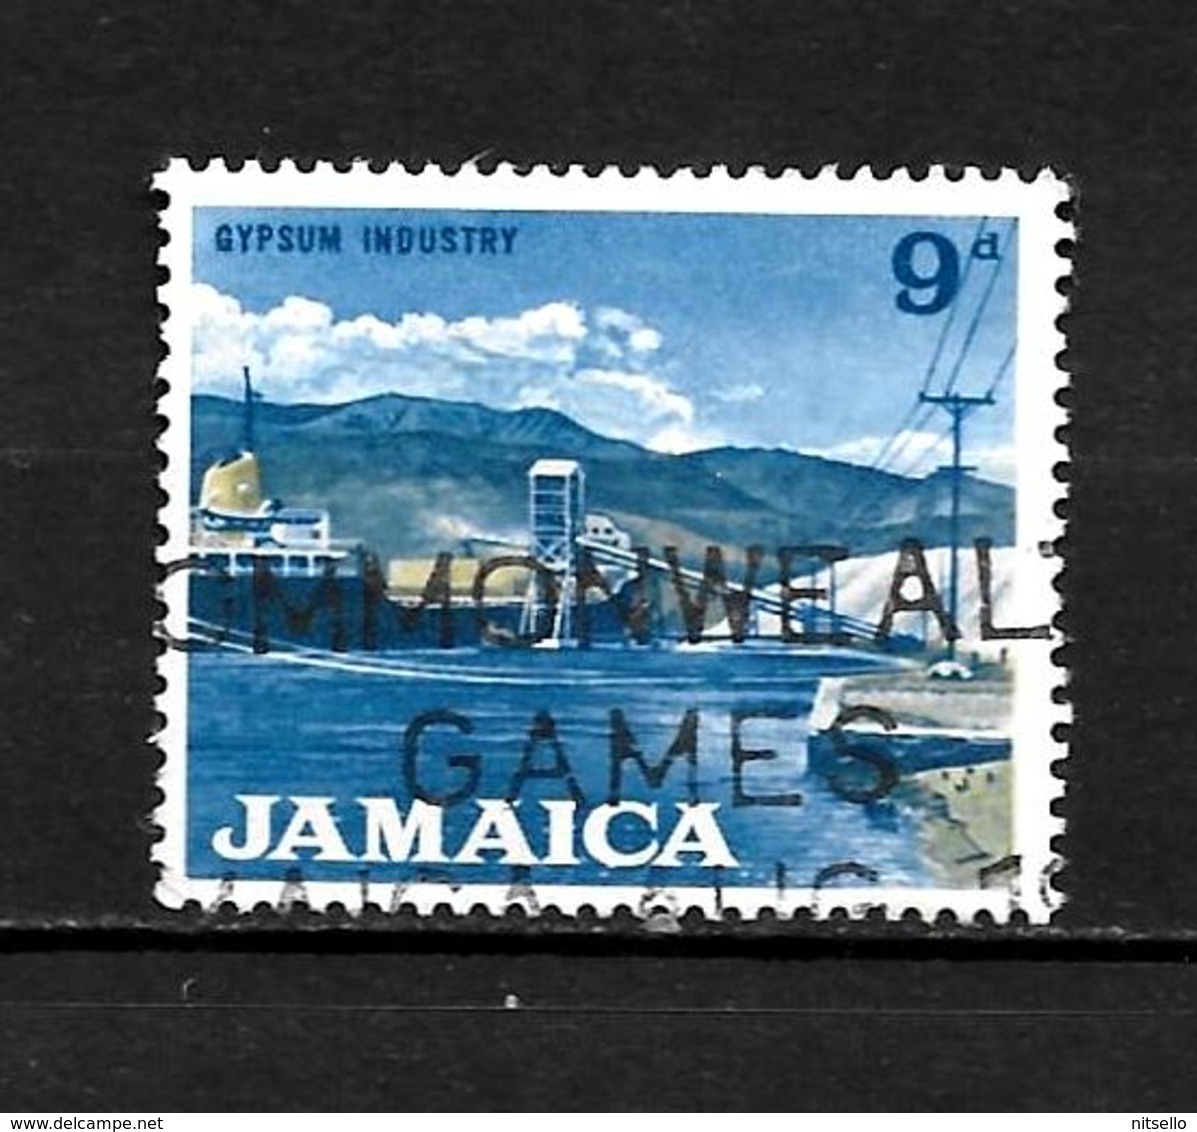 LOTE 1991  ///    JAMAICA    ¡¡¡ OFERTA - LIQUIDATION !!! JE LIQUIDE !!! - Jamaique (1962-...)